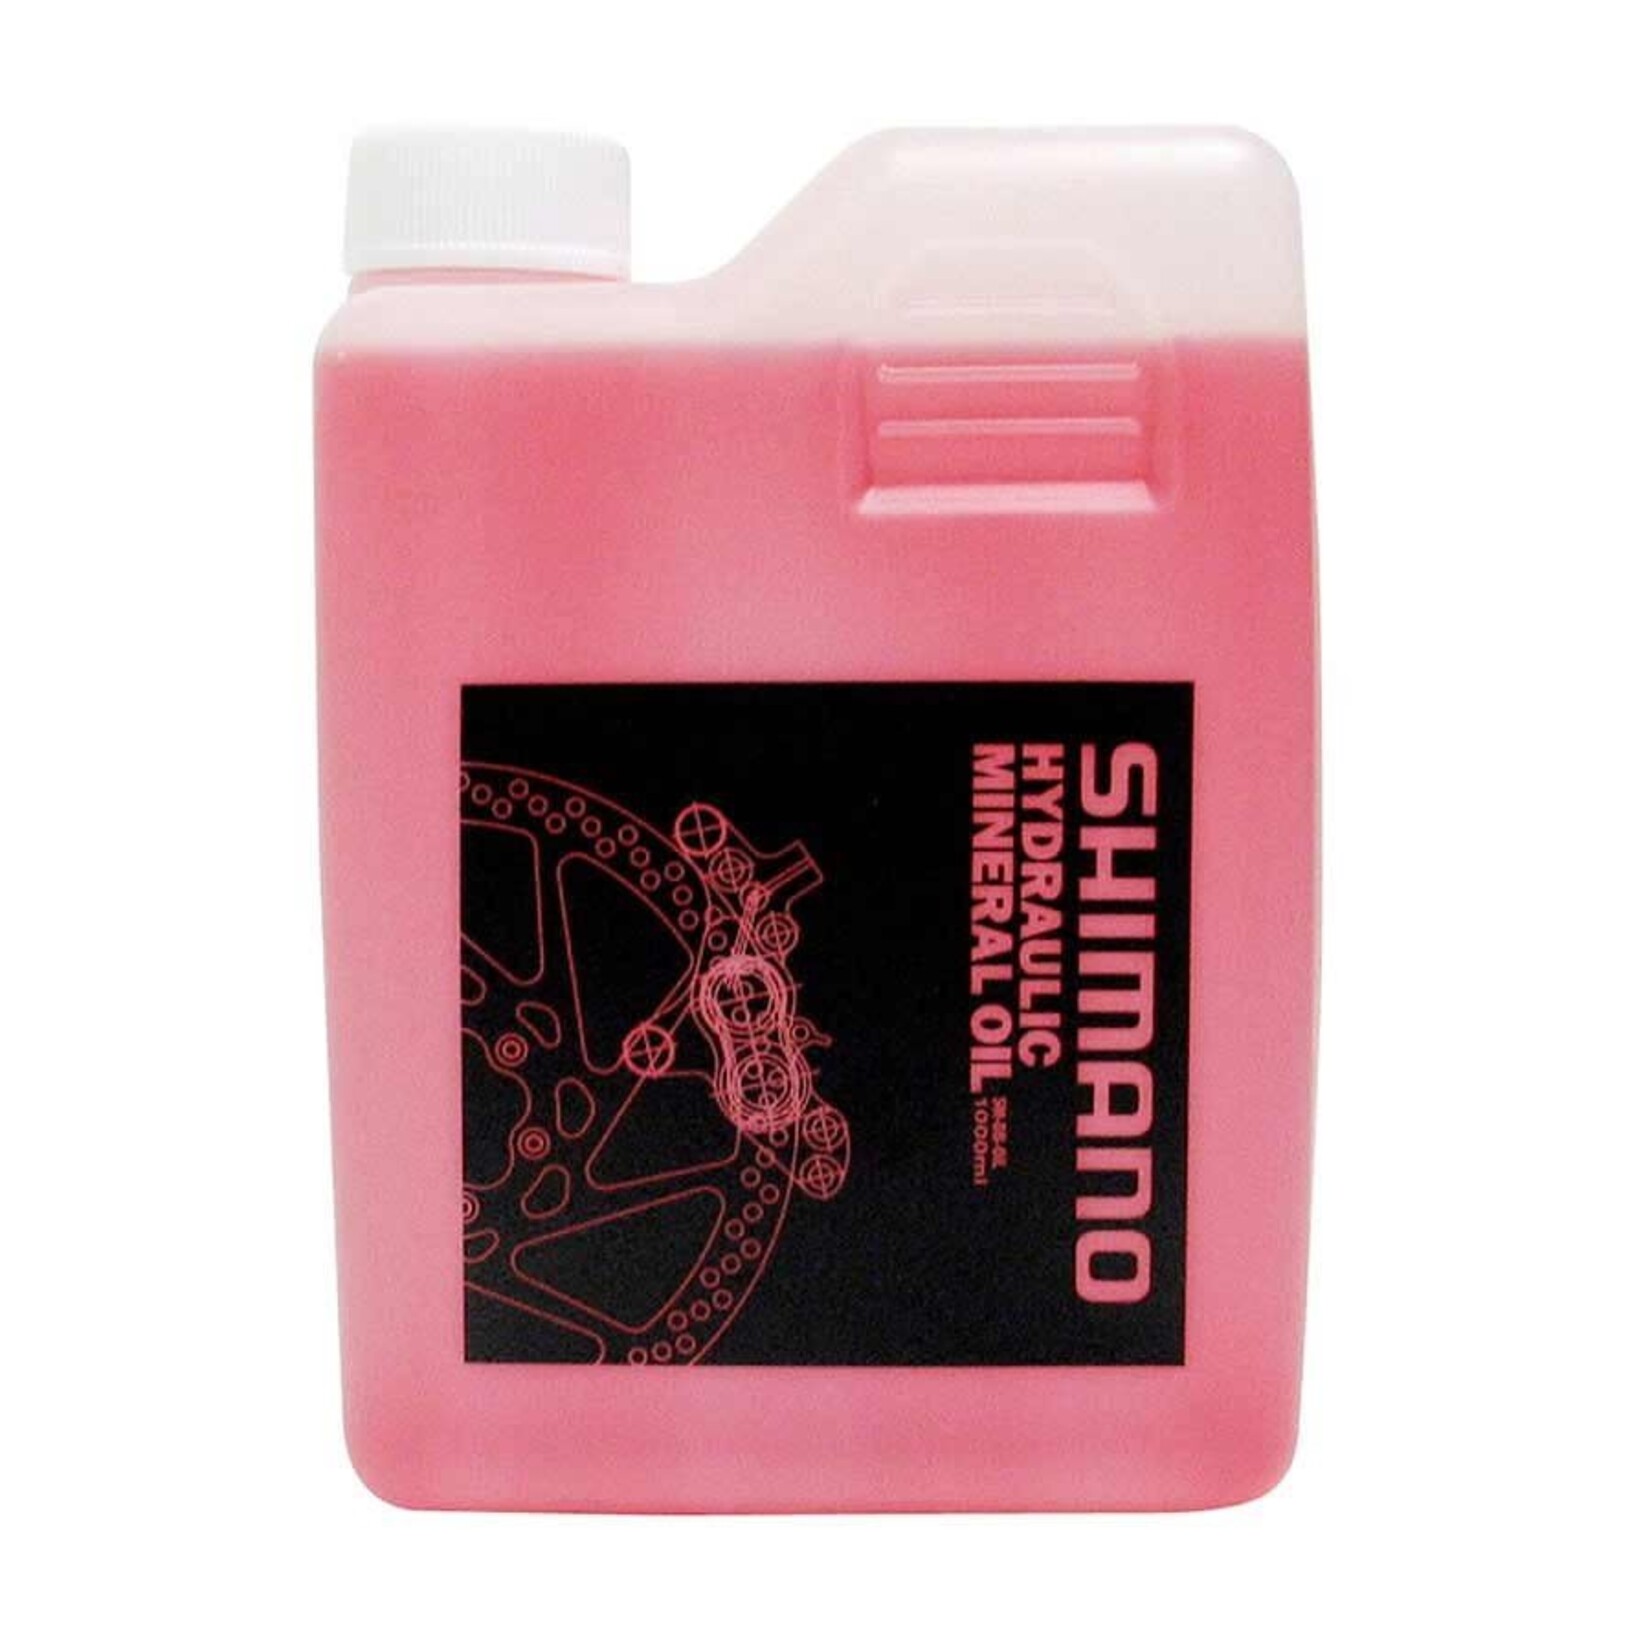 Shimano Shimano, Mineral oil for disc brake, 1 Litre